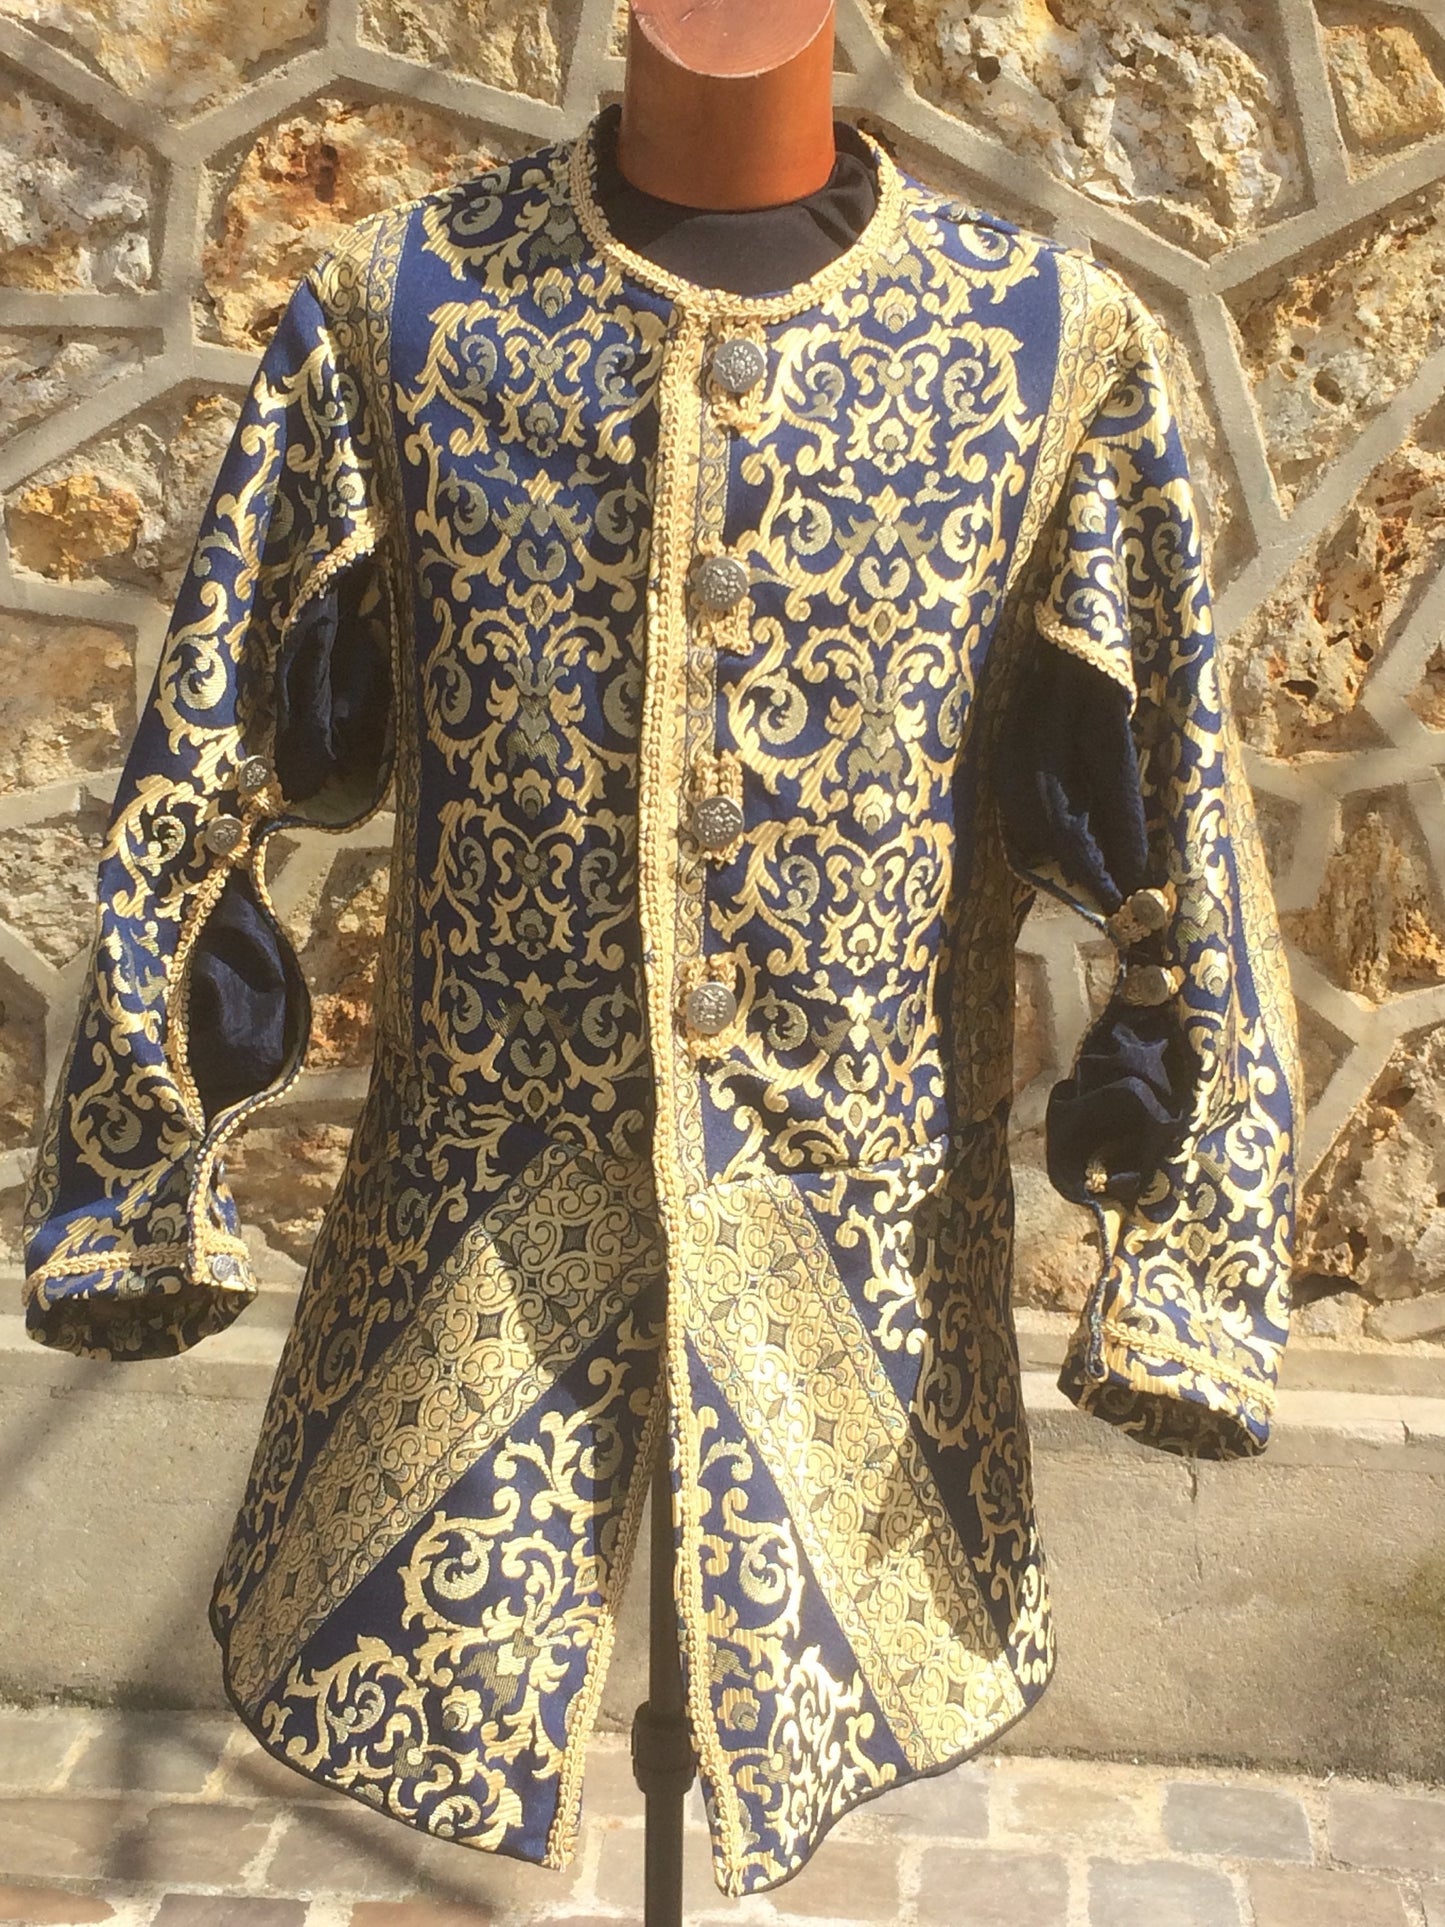 Veste royale pour mariage médiéval, Renaissance,  Louis XIV, avec manches ouvertes, bleue et or